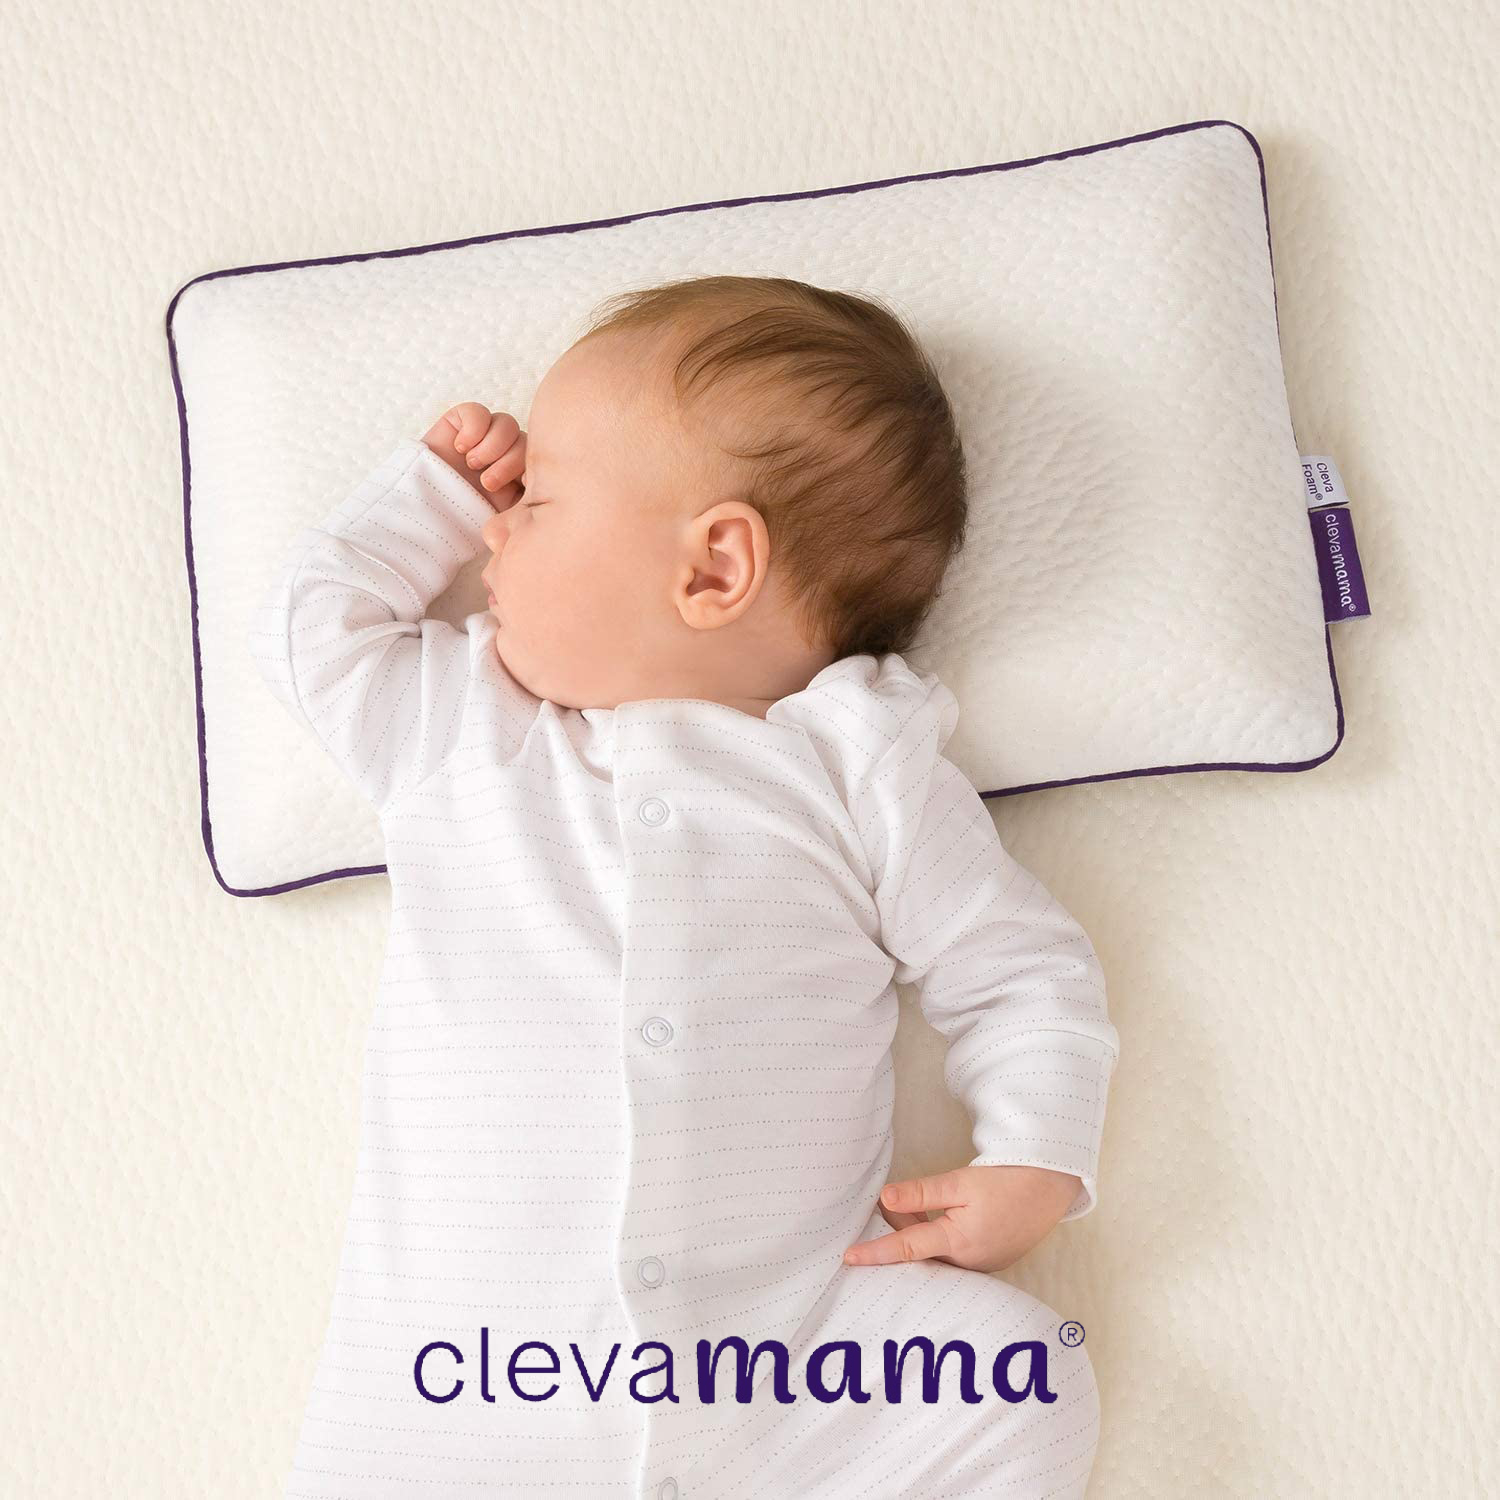 為什麼推薦選擇 ClevaMama 枕頭呢？ClevaMama 嬰兒枕主要有以下 6 大特點